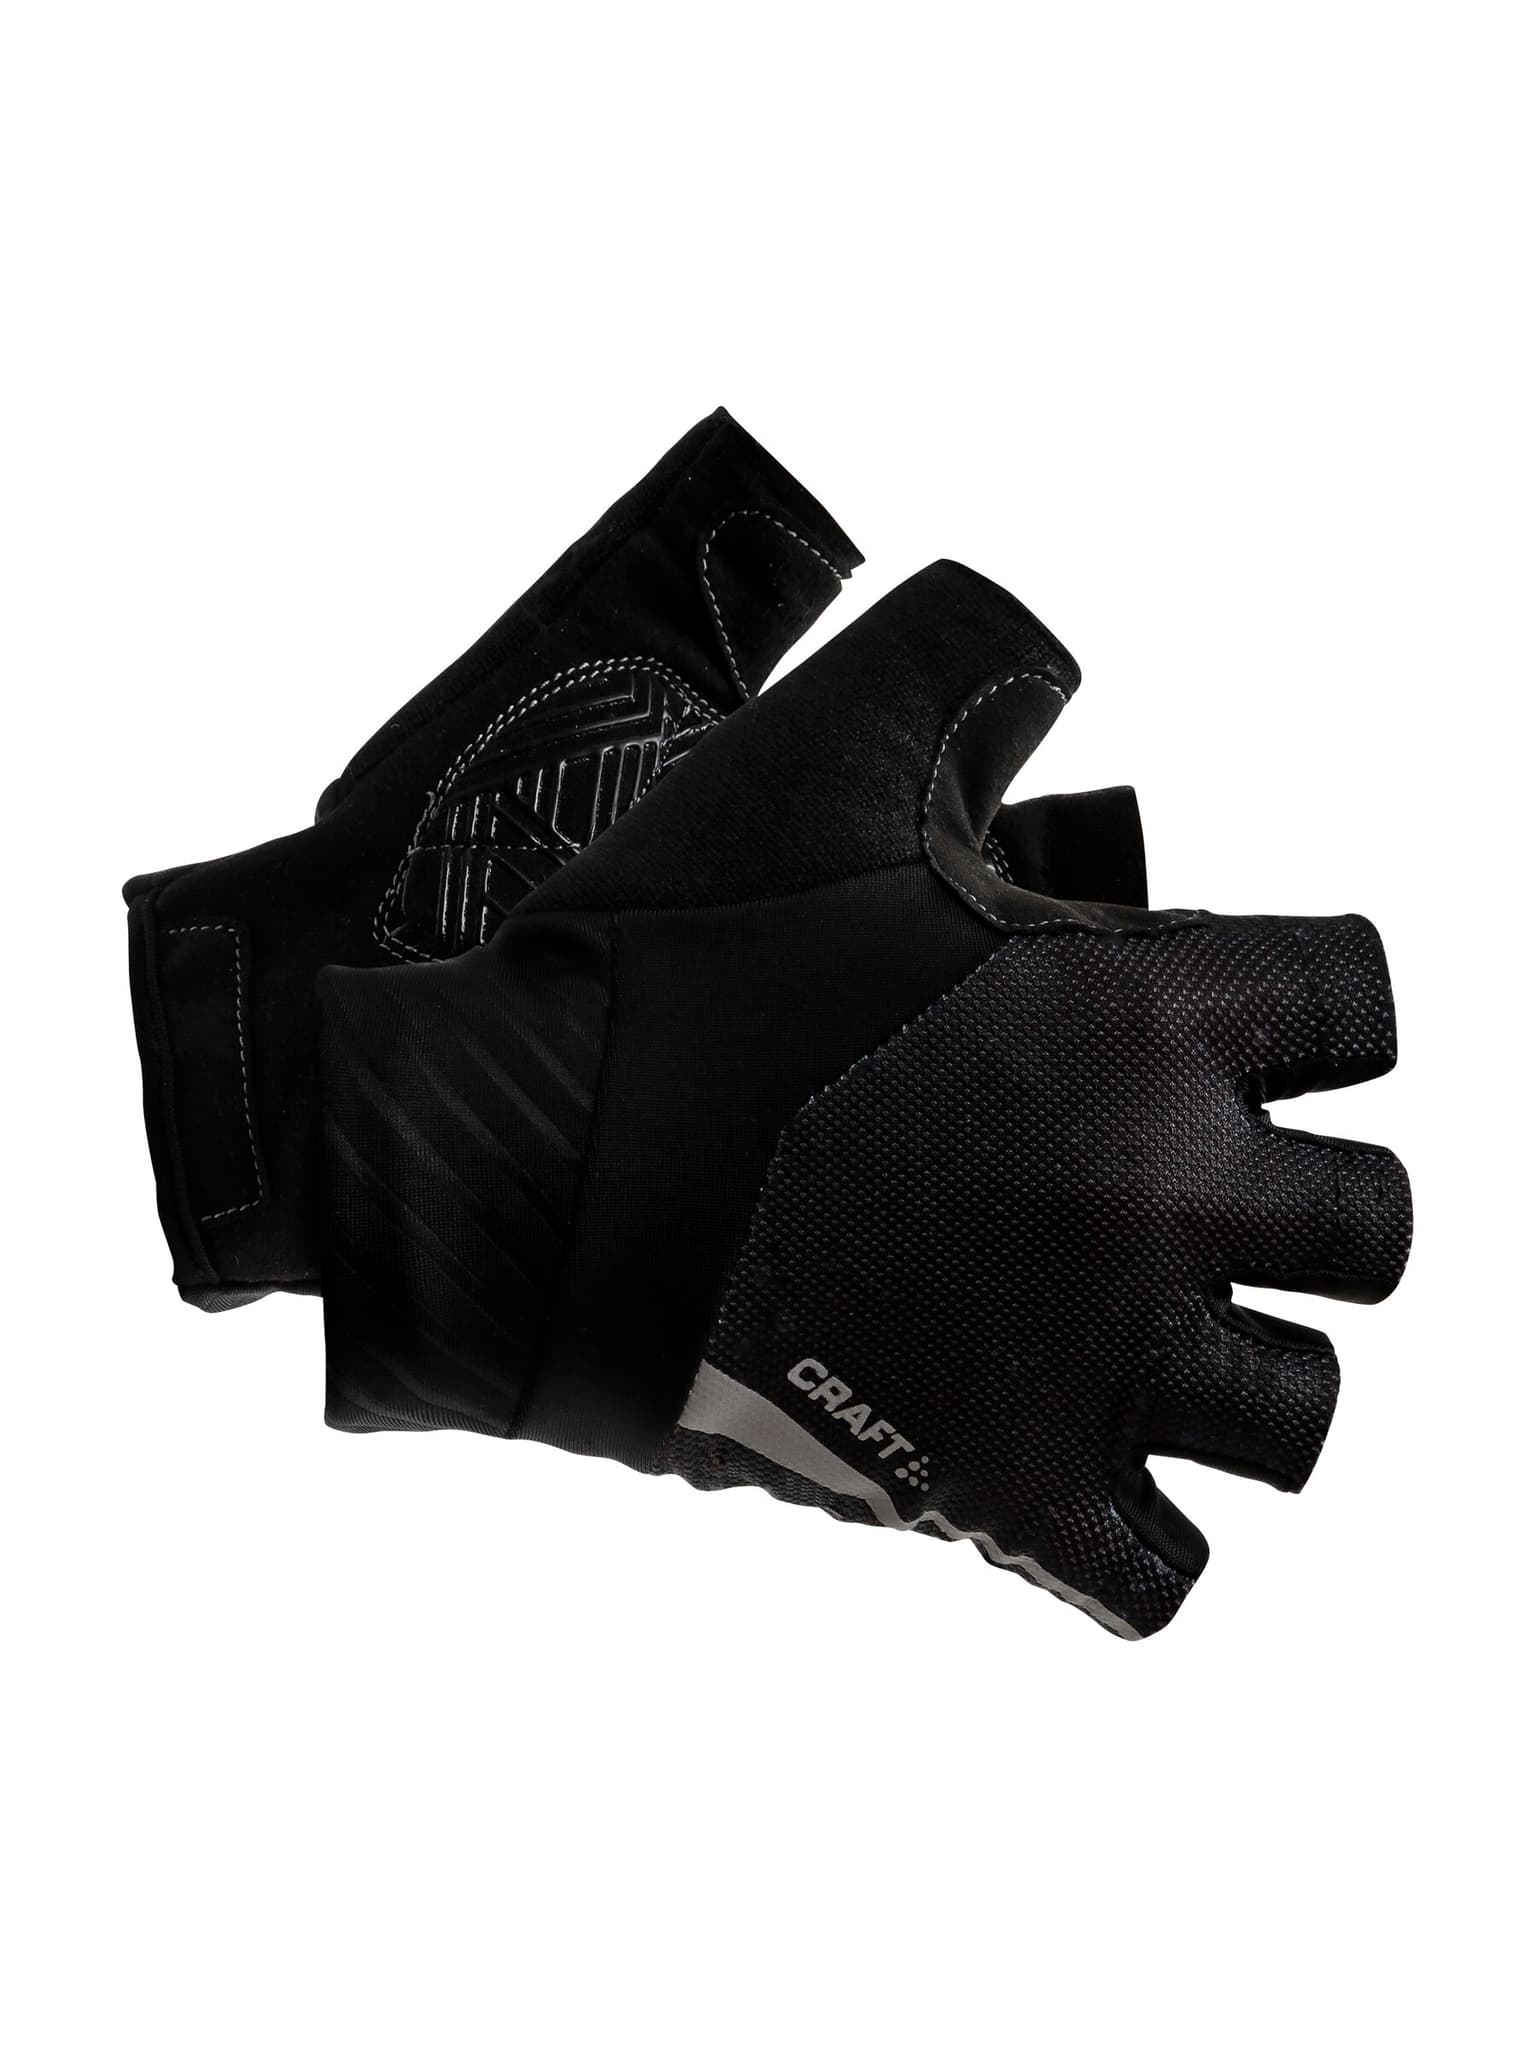 Craft Craft Adv Rouleur Glove Handschuhe schwarz 1